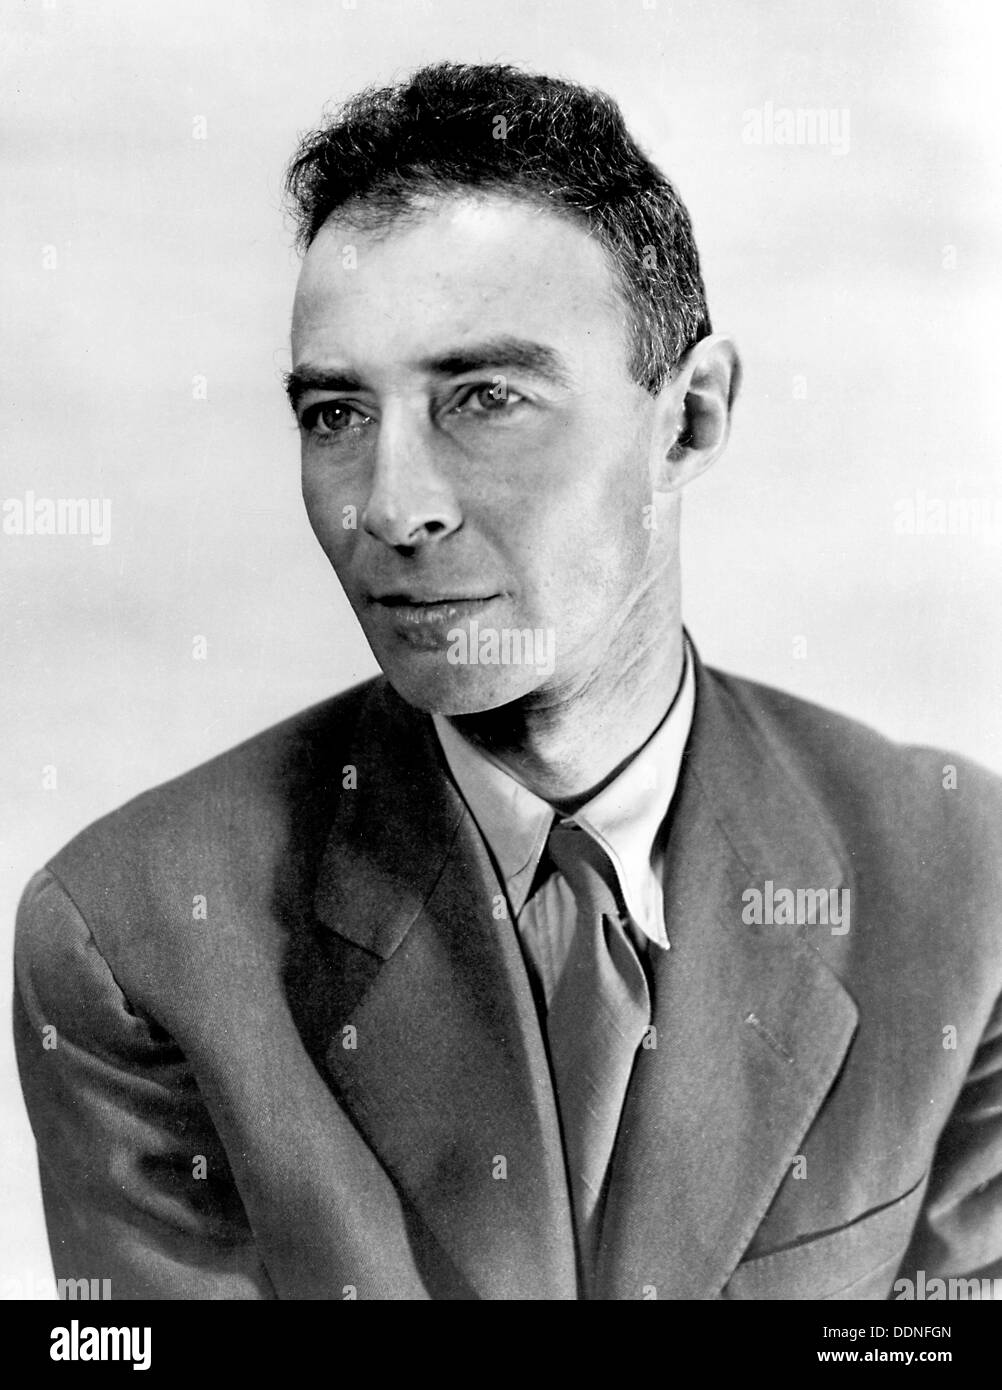 Robert Oppenheimer, Julius Robert Oppenheimer, physicien théoricien américain souvent appelé le "père de la bombe atomique" Banque D'Images